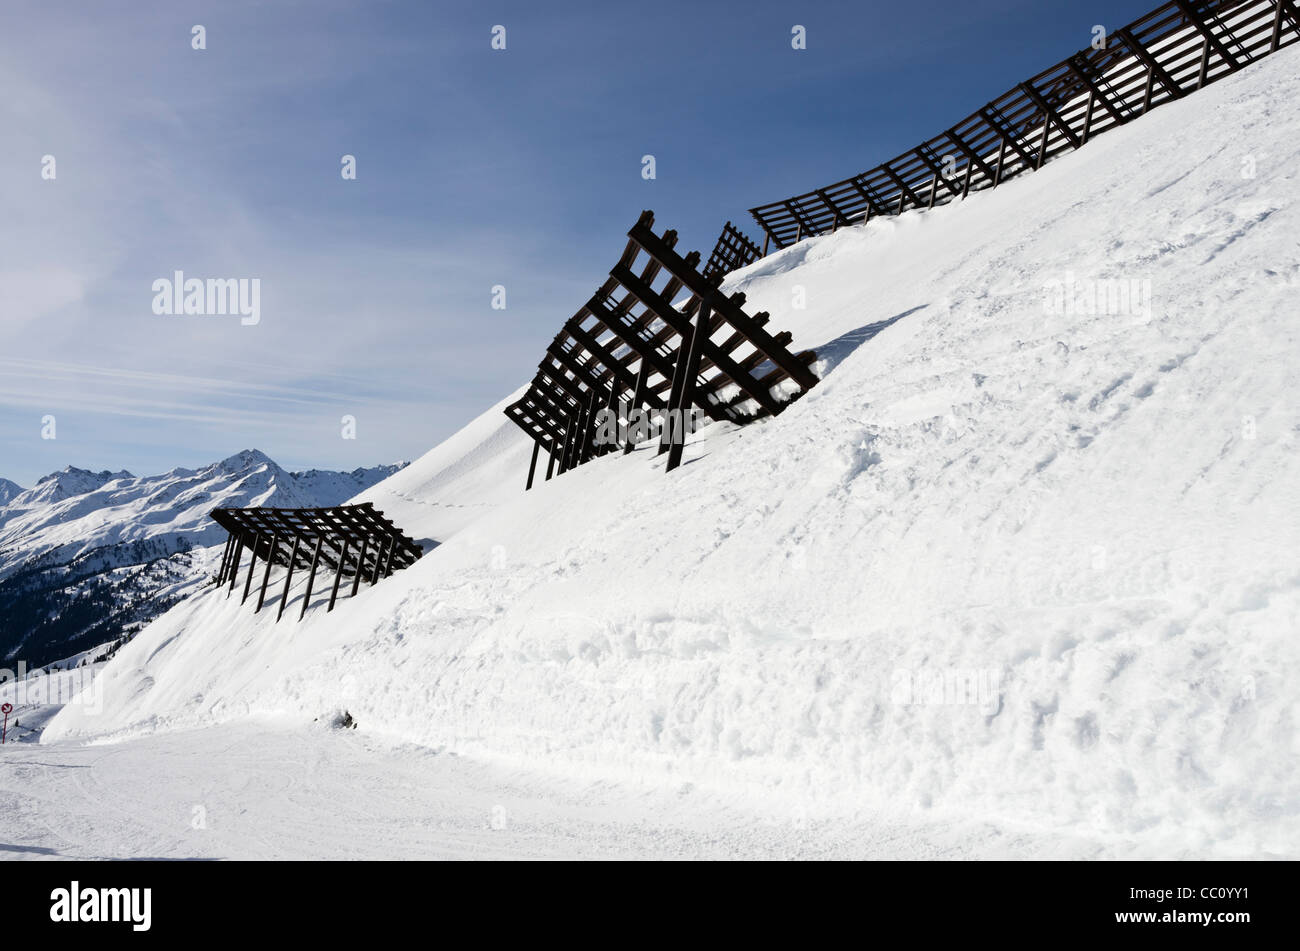 Controllo della neve barriere di protezione delle piste per sci di seguito dal rischio di valanghe in inverno in St Anton am Arlberg Tirolo Austria Foto Stock